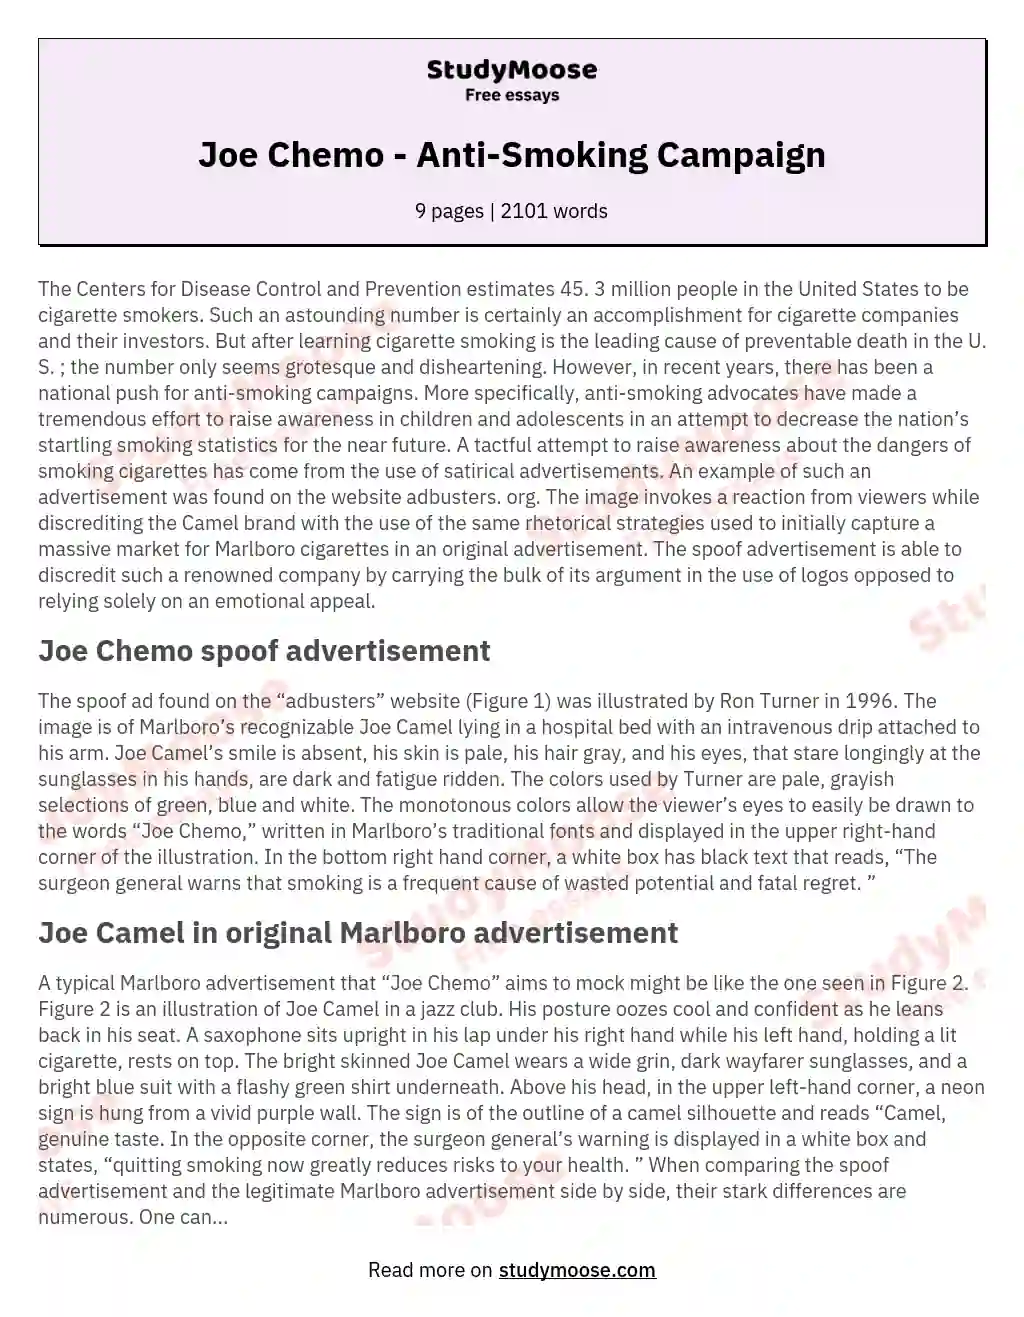 Joe Chemo - Anti-Smoking Campaign essay